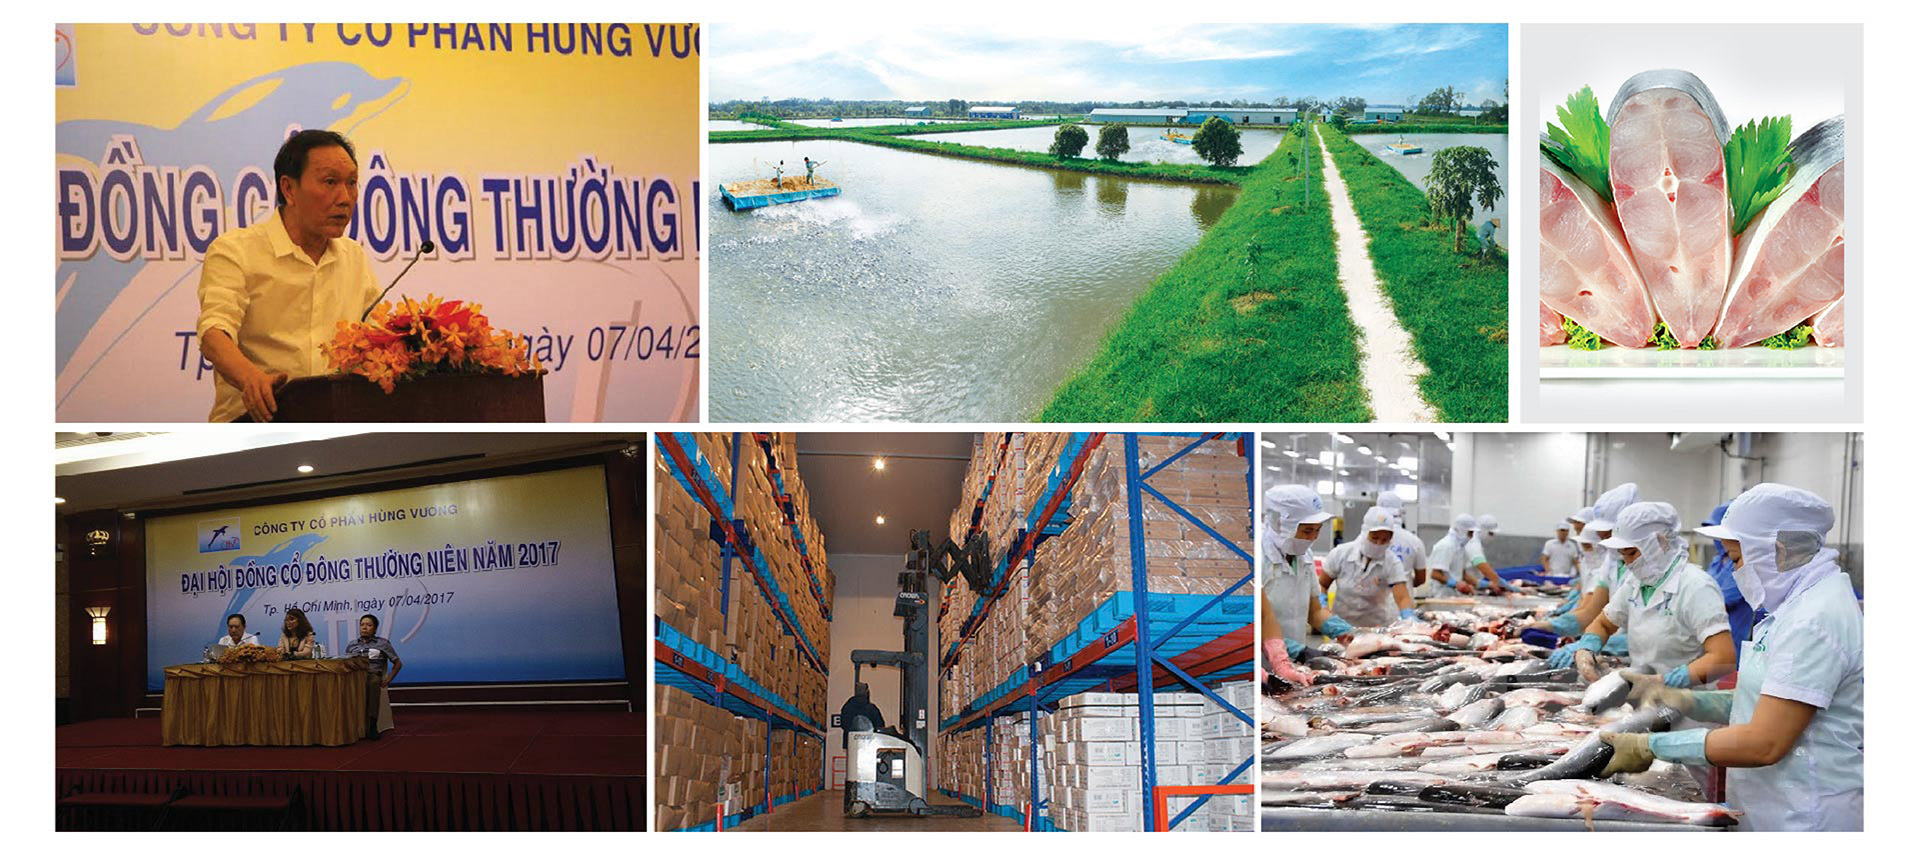 “Vua cá tra” Dương Ngọc Minh: Từ lợi nhuận trăm tỷ đến nợ nần nghìn tỷ - 11